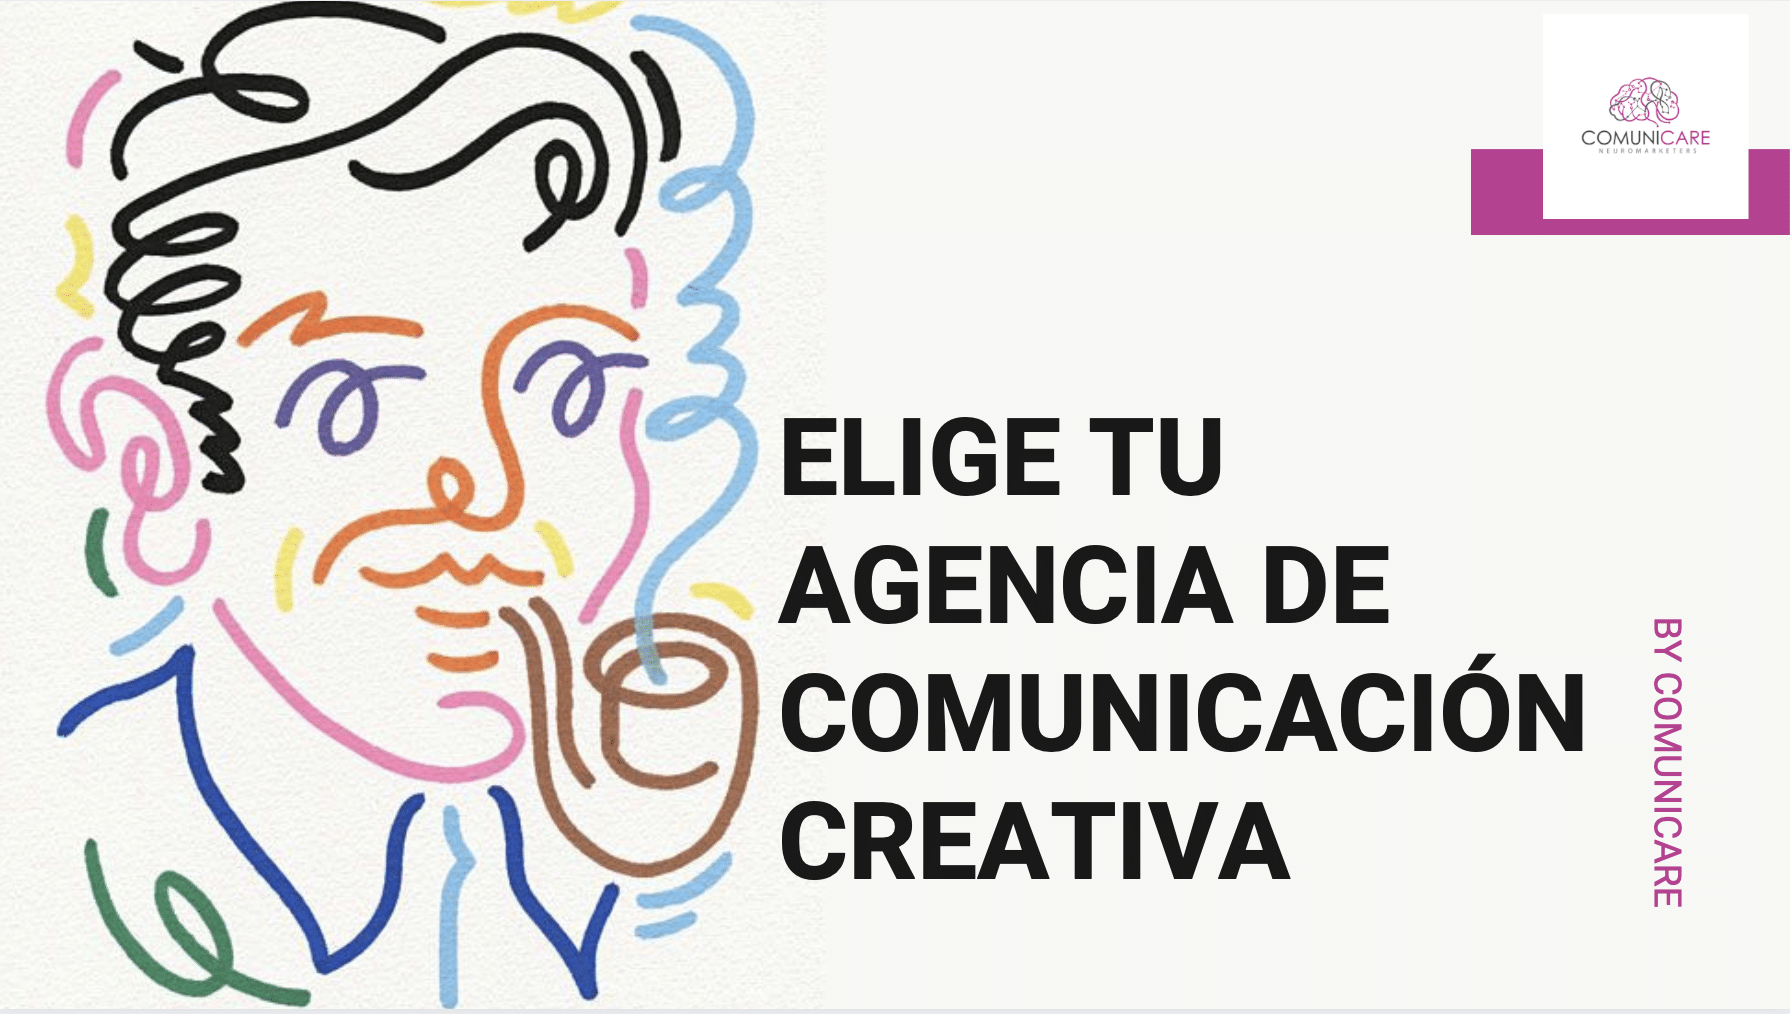 Agencia De Comunicación Creativa Lo Que Necesitas Saber Comunicare 9601